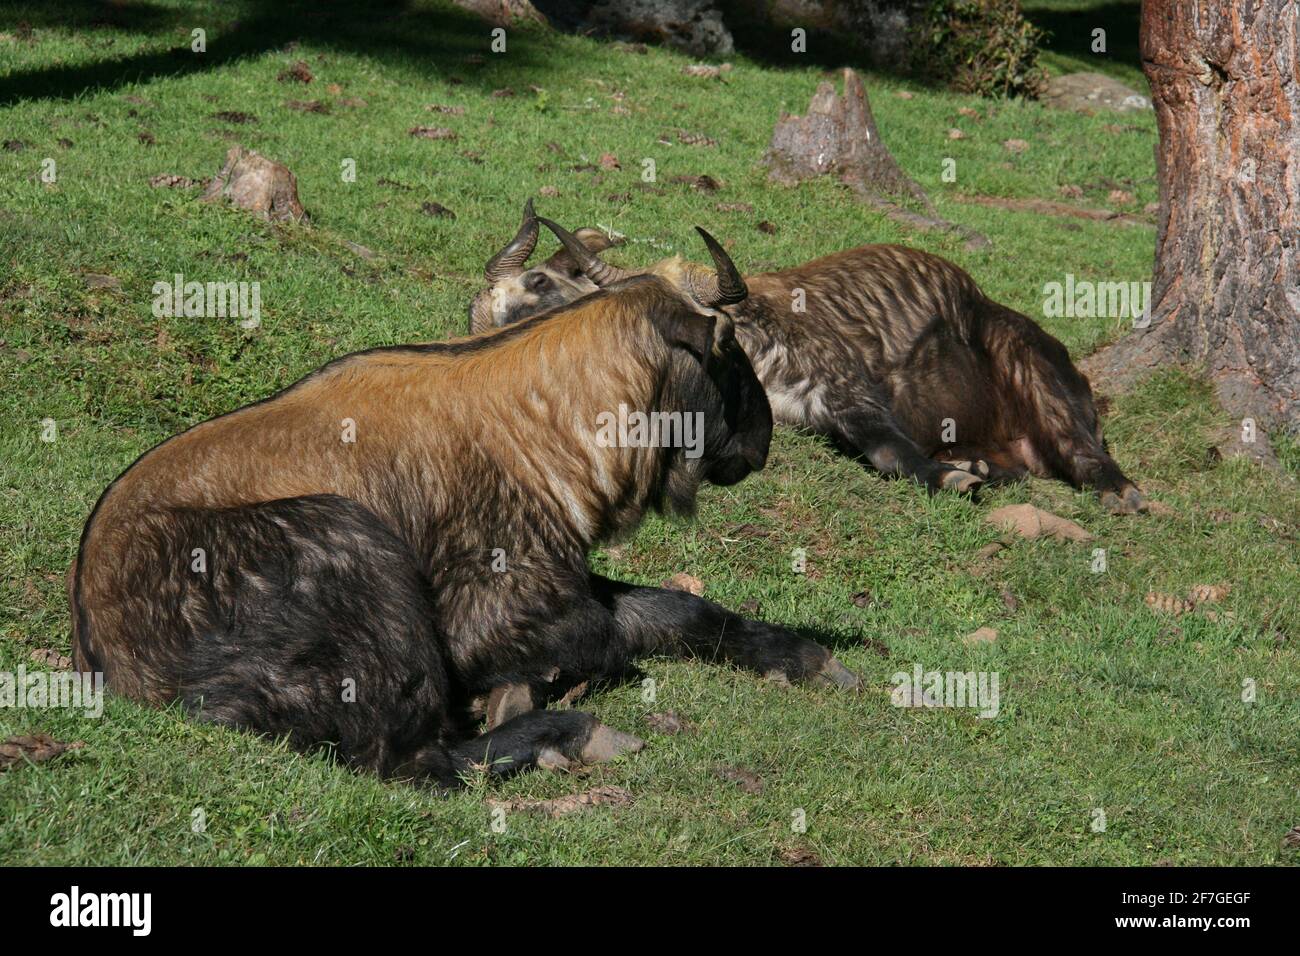 Takin animales salvajes endémicos amenazados reino bután himalaya Rare razas animales especies vida silvestre cuernos cabras pelar naturalmente al aire libre yak Foto de stock